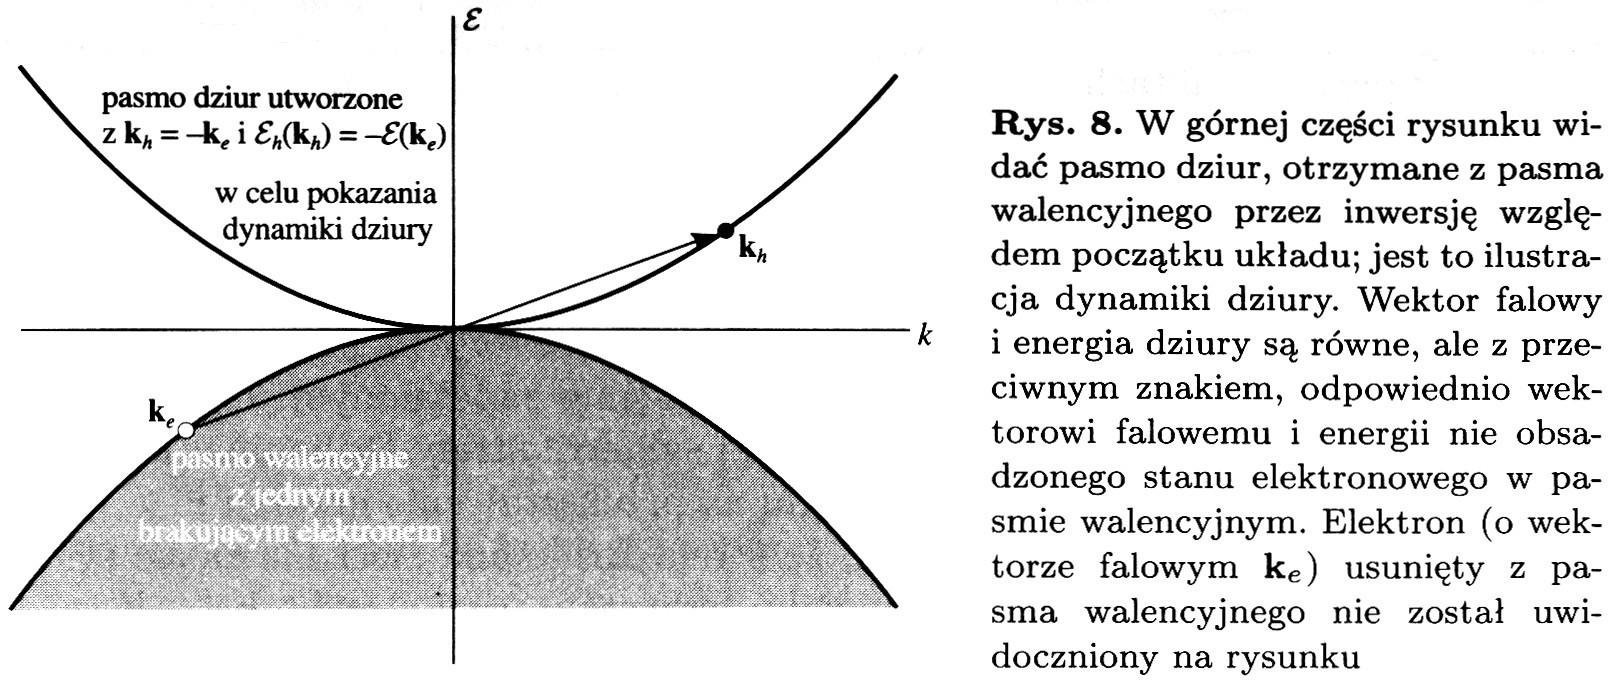 Energia, prędkość i masa efektywna dziury Poniżej schematyczne przedstawienie pasma dziurowego powstałego z pasma walencyjnego v - e(ke) = v - e(-ke) = h(-ke) - v = h(kh) - v k h(kh) = k e(ke) h(kh)